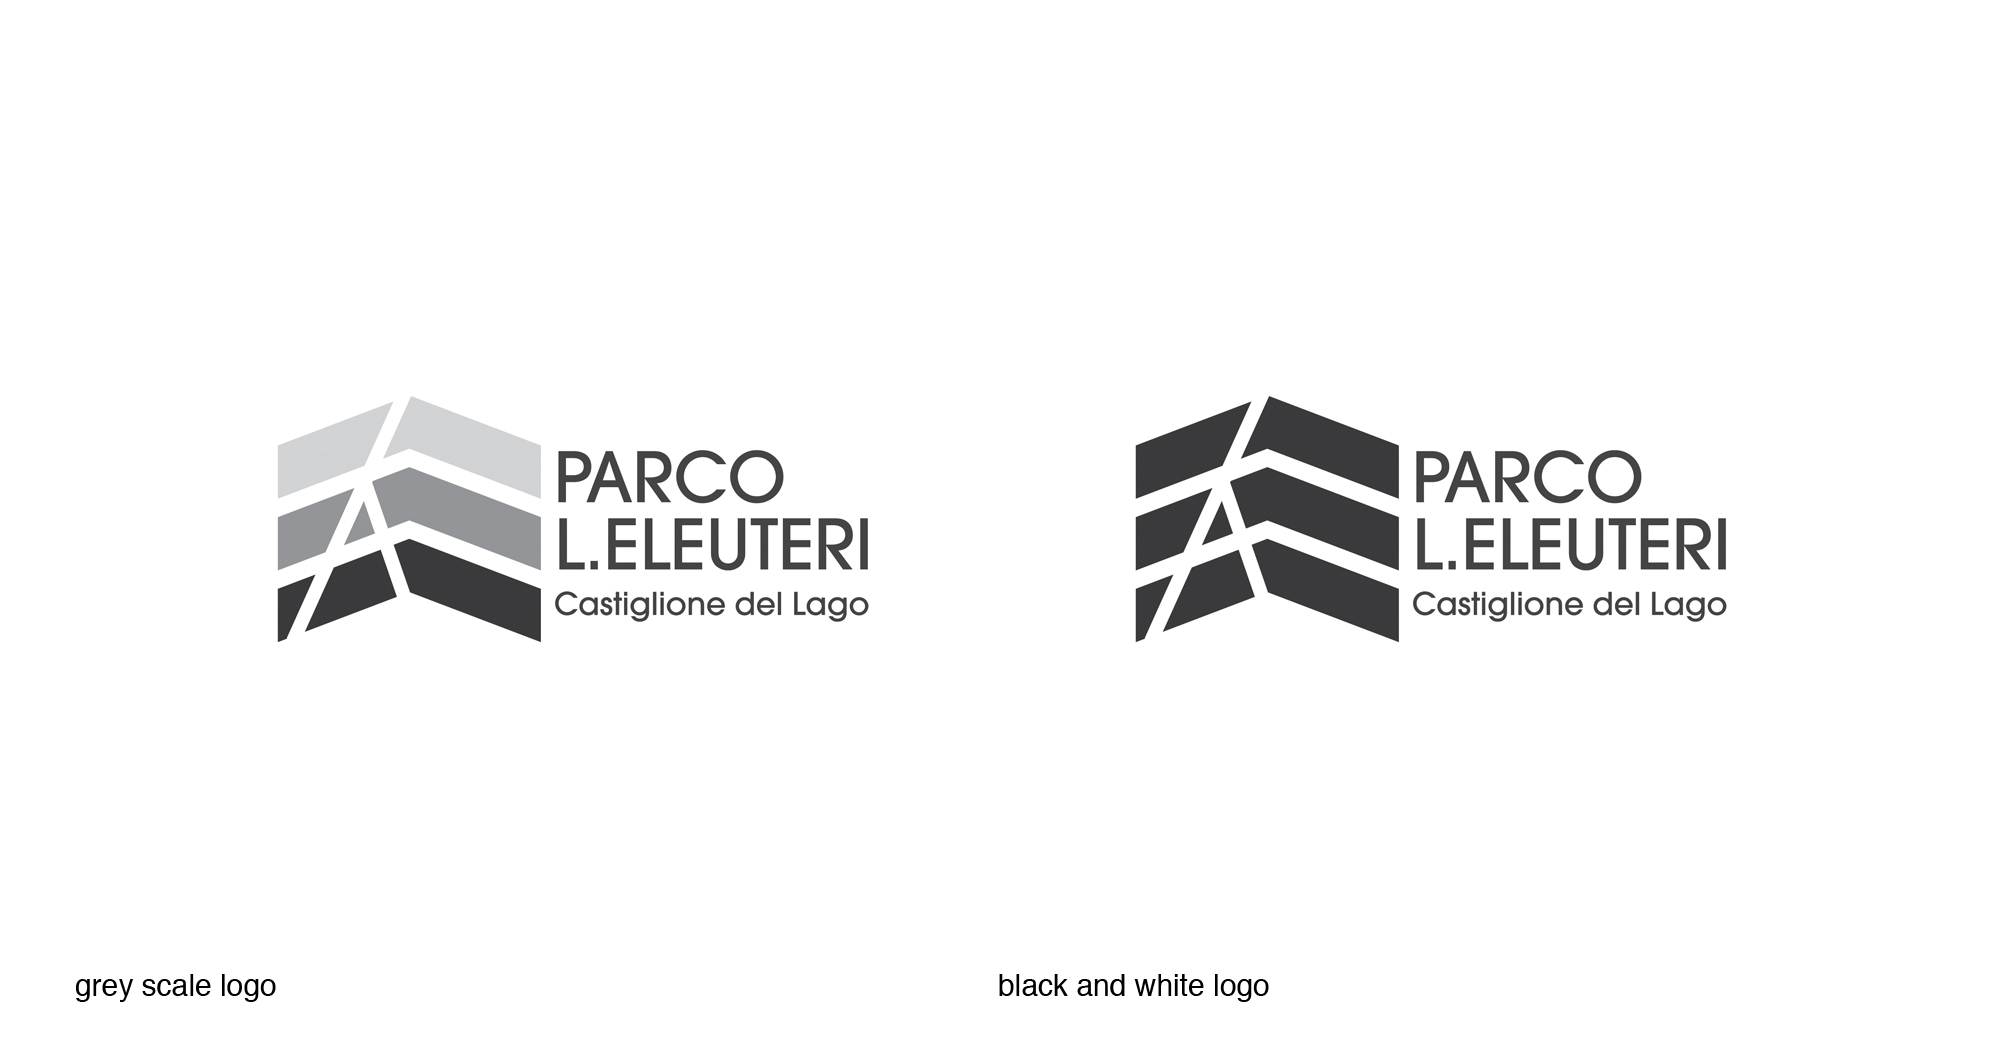 Parco L. Eleuteri logotype